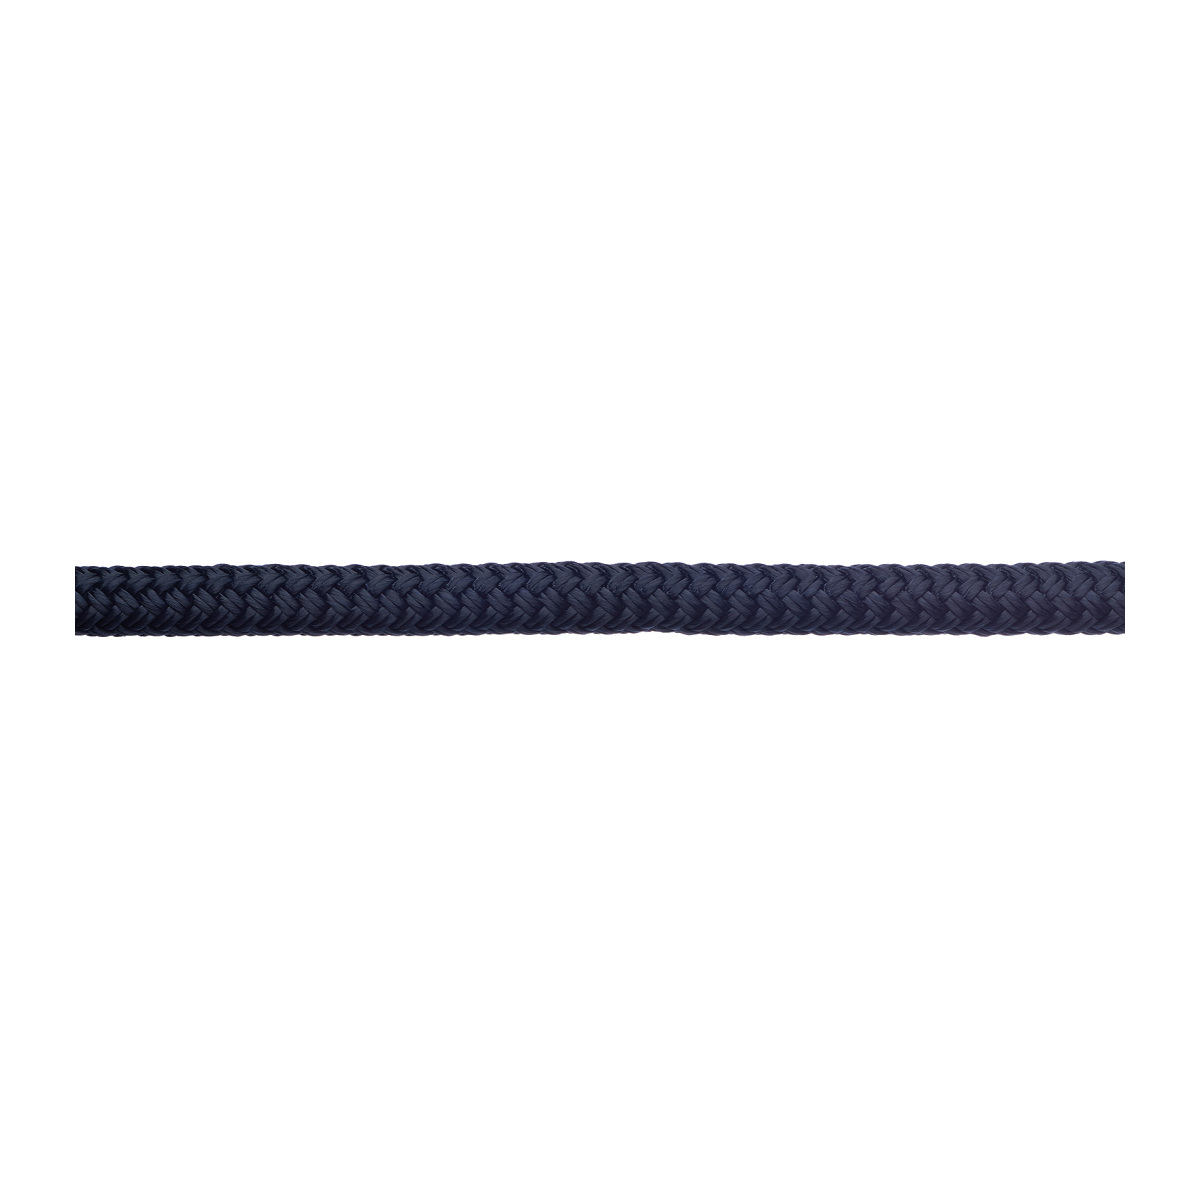 Robline amarre Rio 12mm longueur 6m navy/bleu